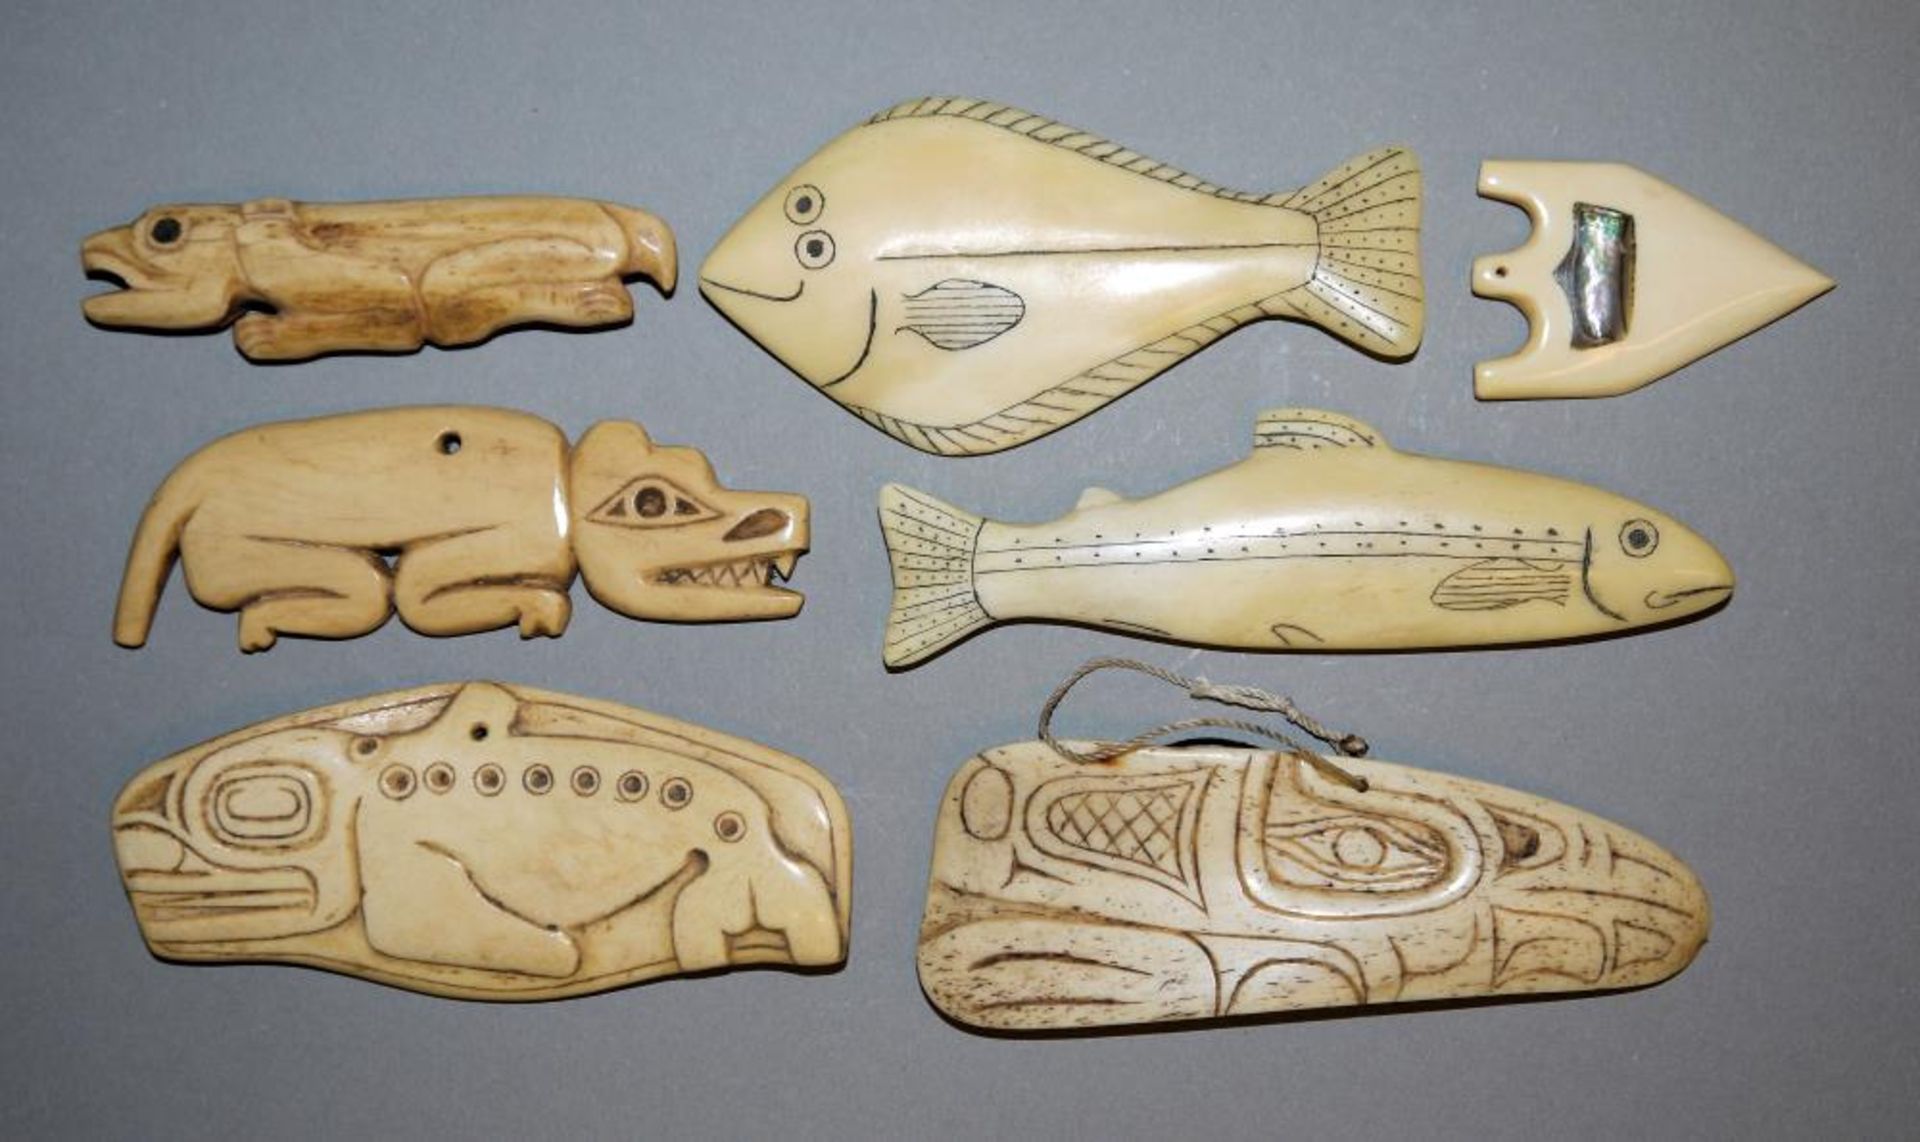 Sieben Amulette der Tlingit- oder Haida-Indianer, Kanada Schamanen- Amulette in Formen von Orca-Wal,